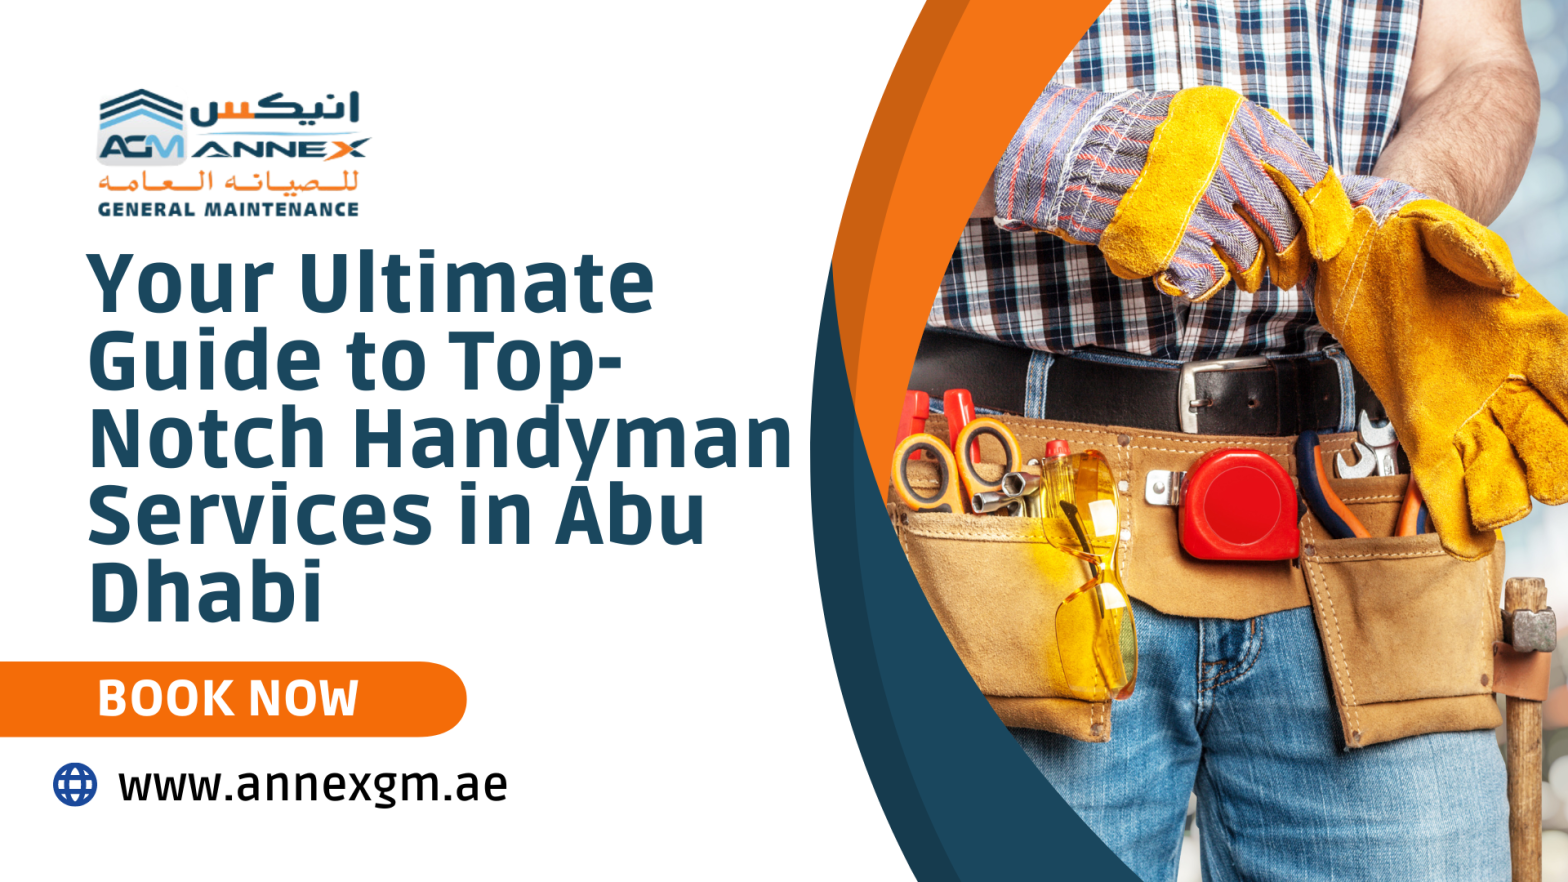 Handyman Services in Abu Dhabi